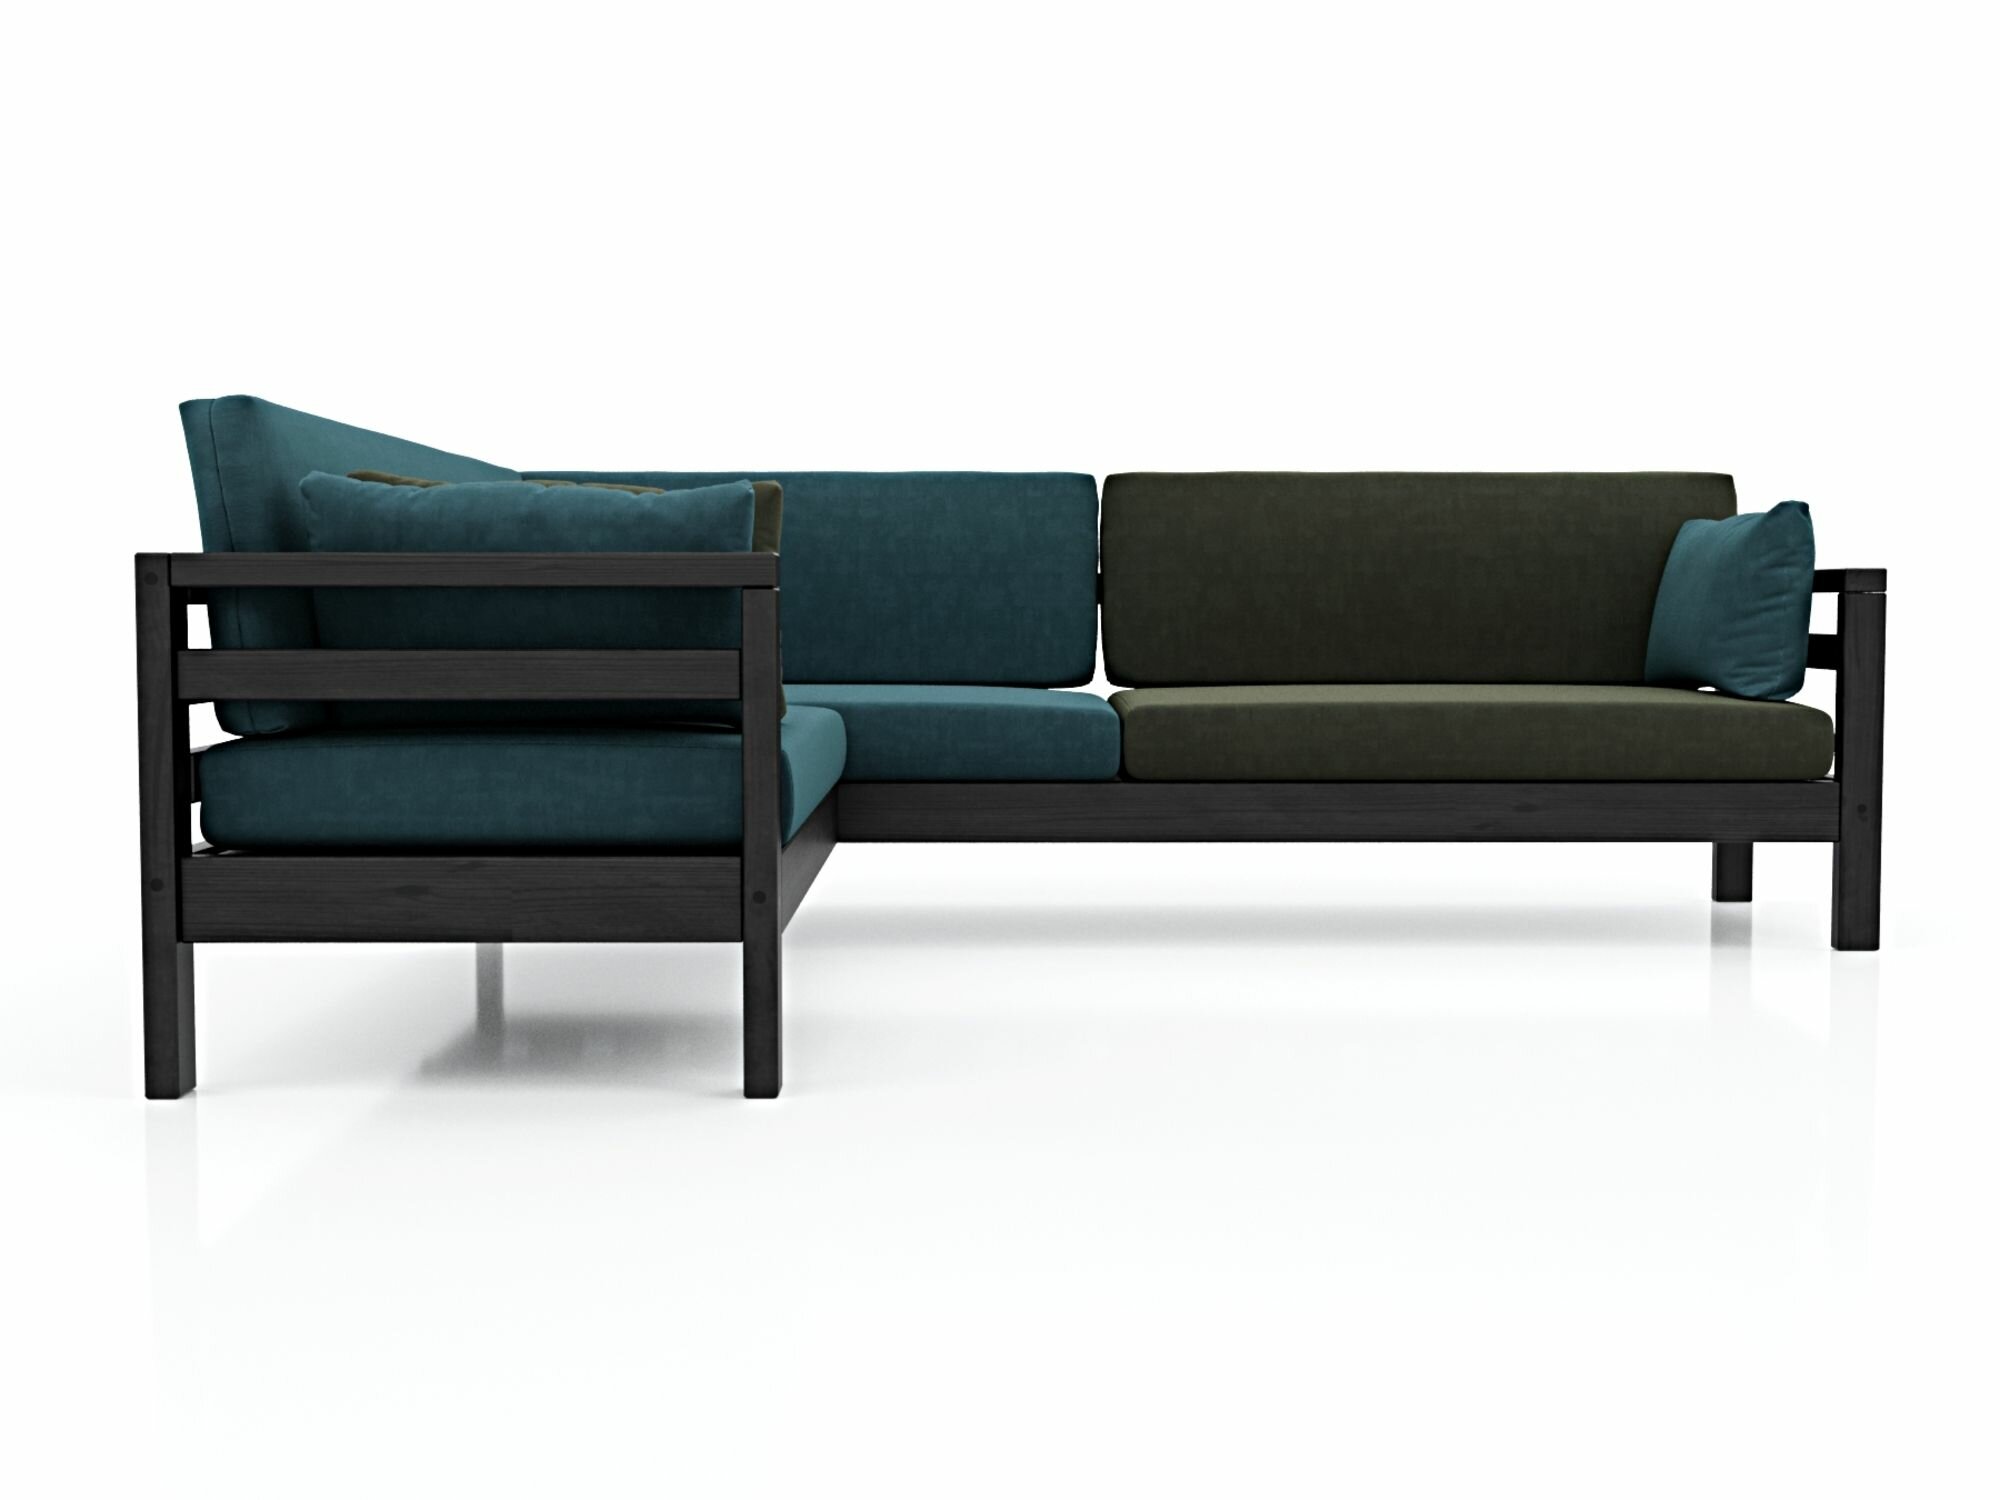 Угловой диван домино-у левый, синий+зеленый-венге, велюр, массив дерева, офисный, садовый, для кафе и бара, скандинавский лофт